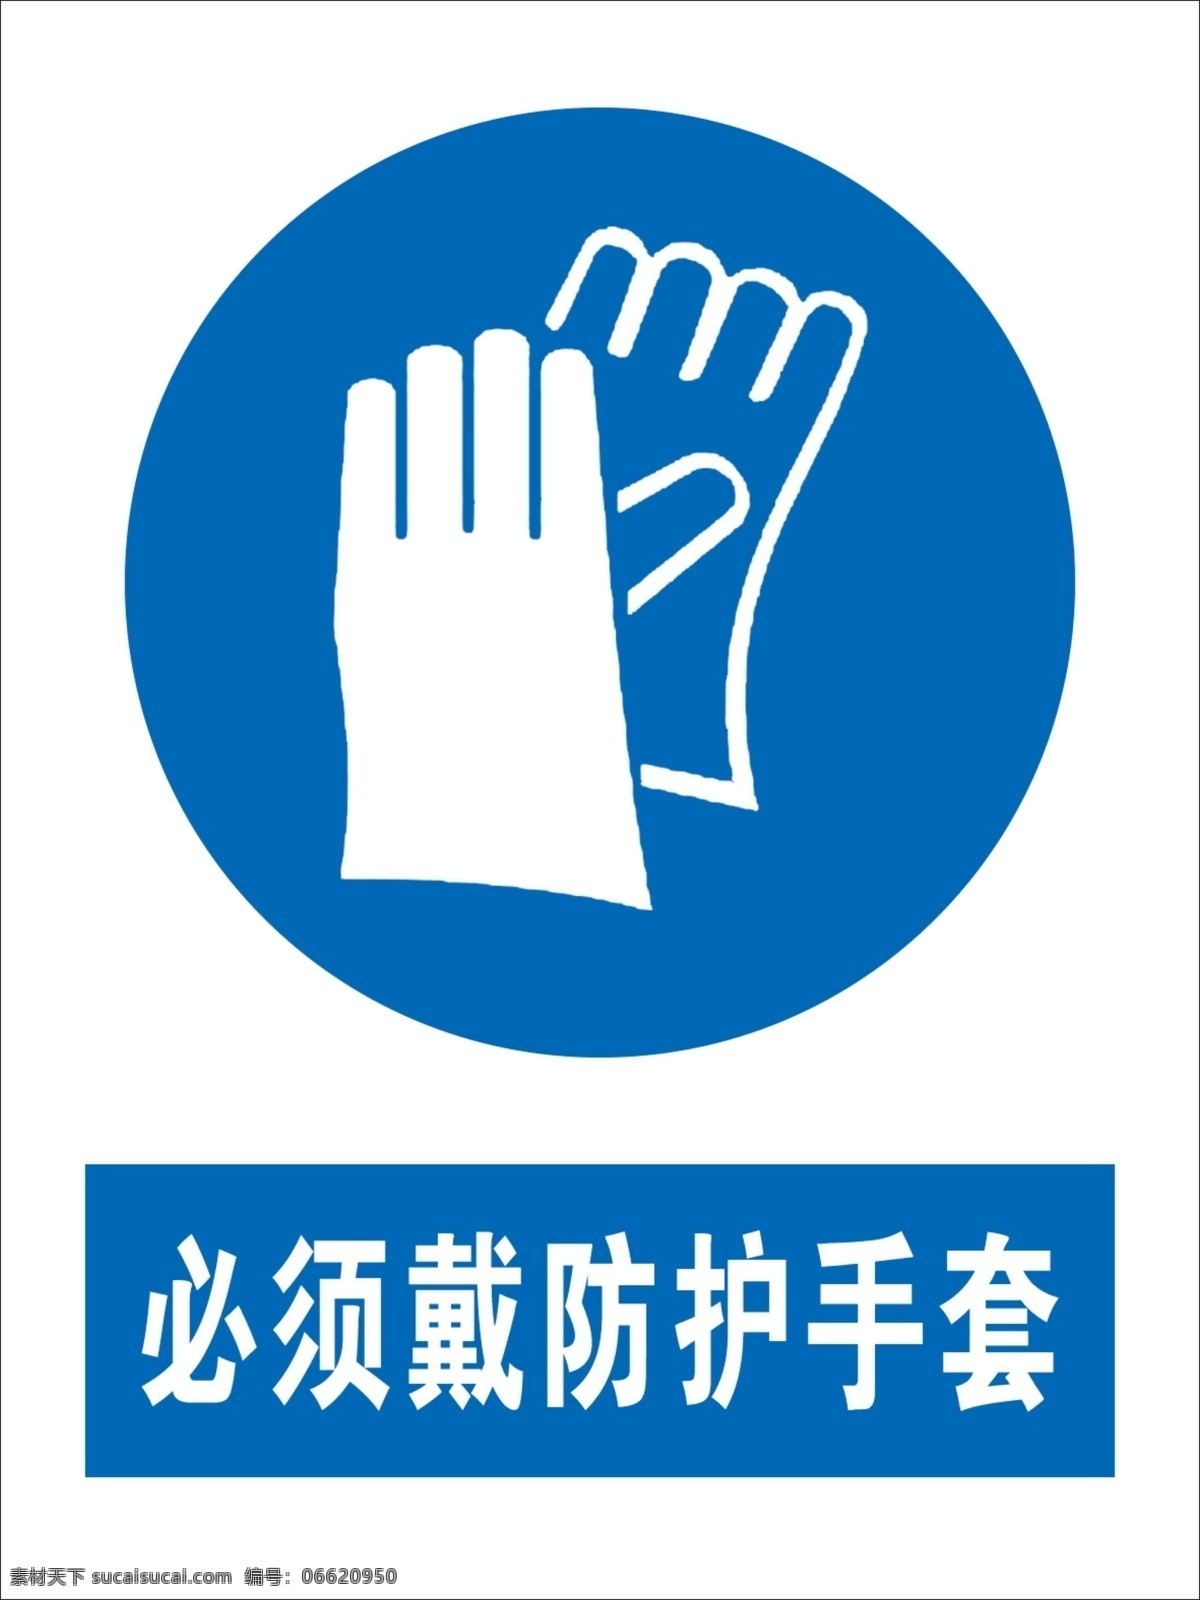 戴 防护 手套 防护手套 必须戴手套 戴防护手套 国标 安全标识 标志图标 公共标识标志